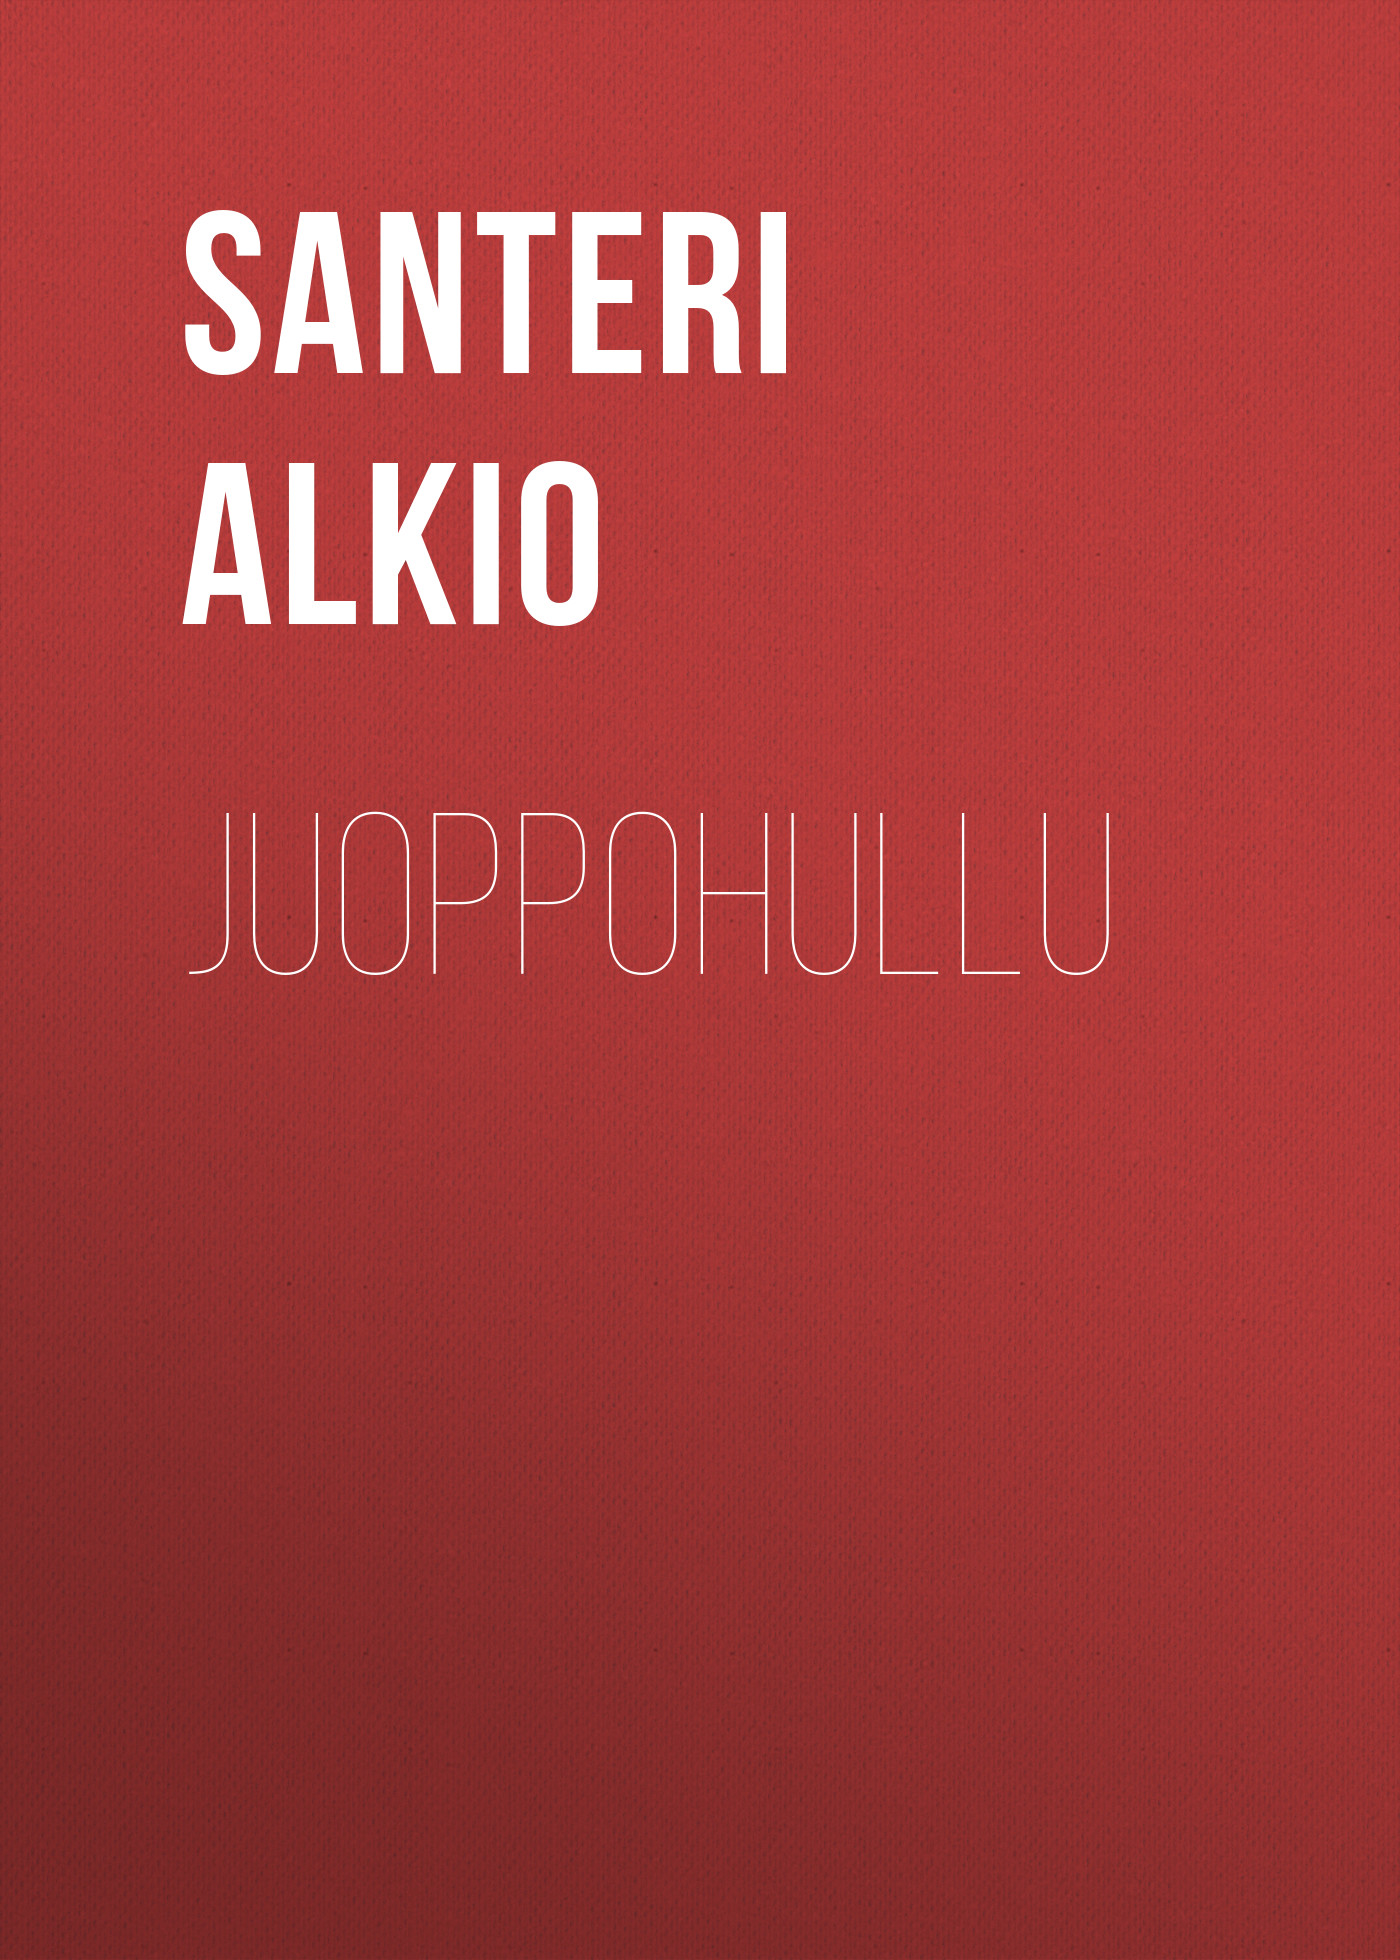 Книга Juoppohullu из серии , созданная Santeri Alkio, может относится к жанру Зарубежная старинная литература, Зарубежная классика. Стоимость электронной книги Juoppohullu с идентификатором 24175652 составляет 5.99 руб.